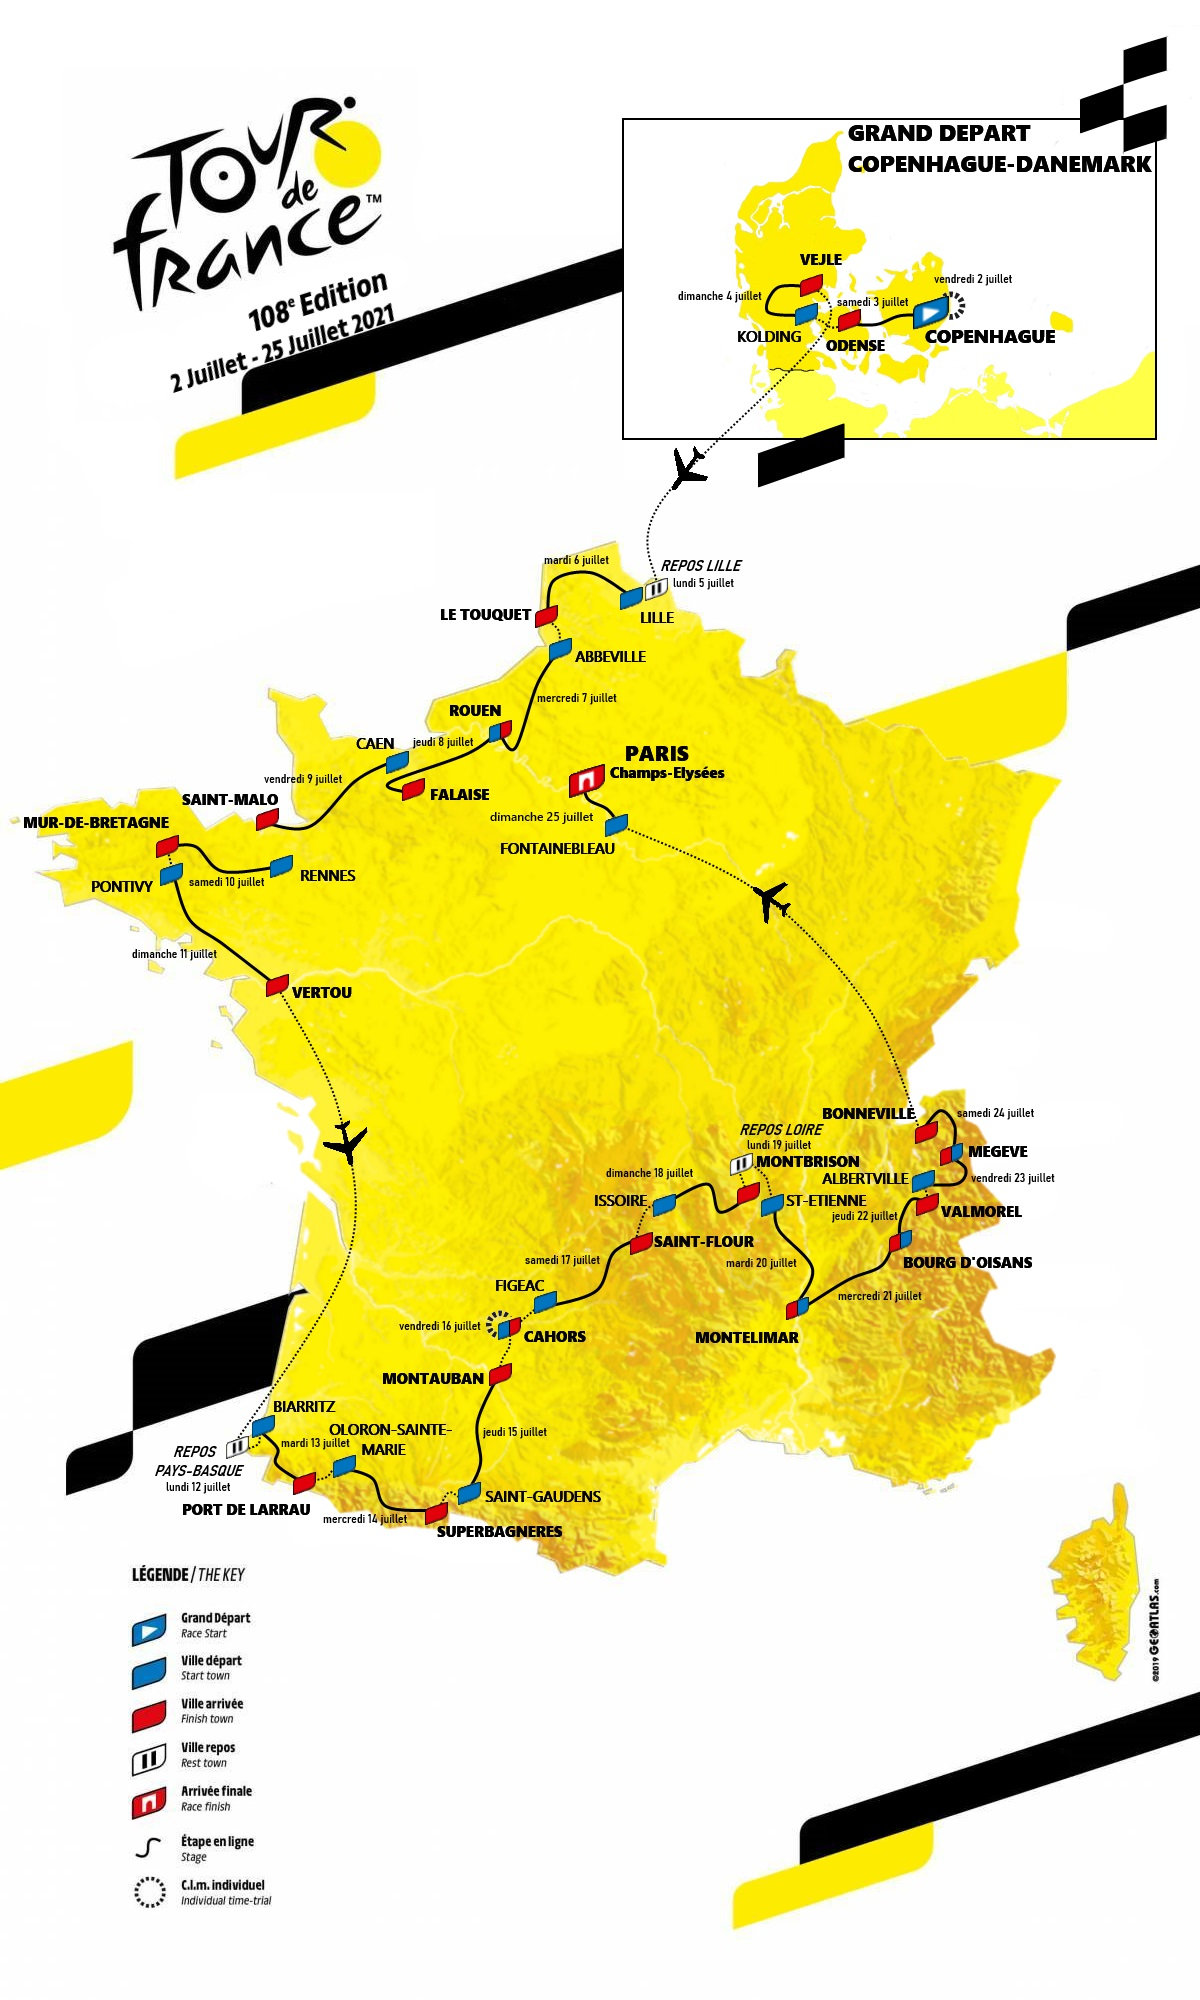 [Concours] Tour de France 2022 - Résultats p.96 - Page 54 - Le